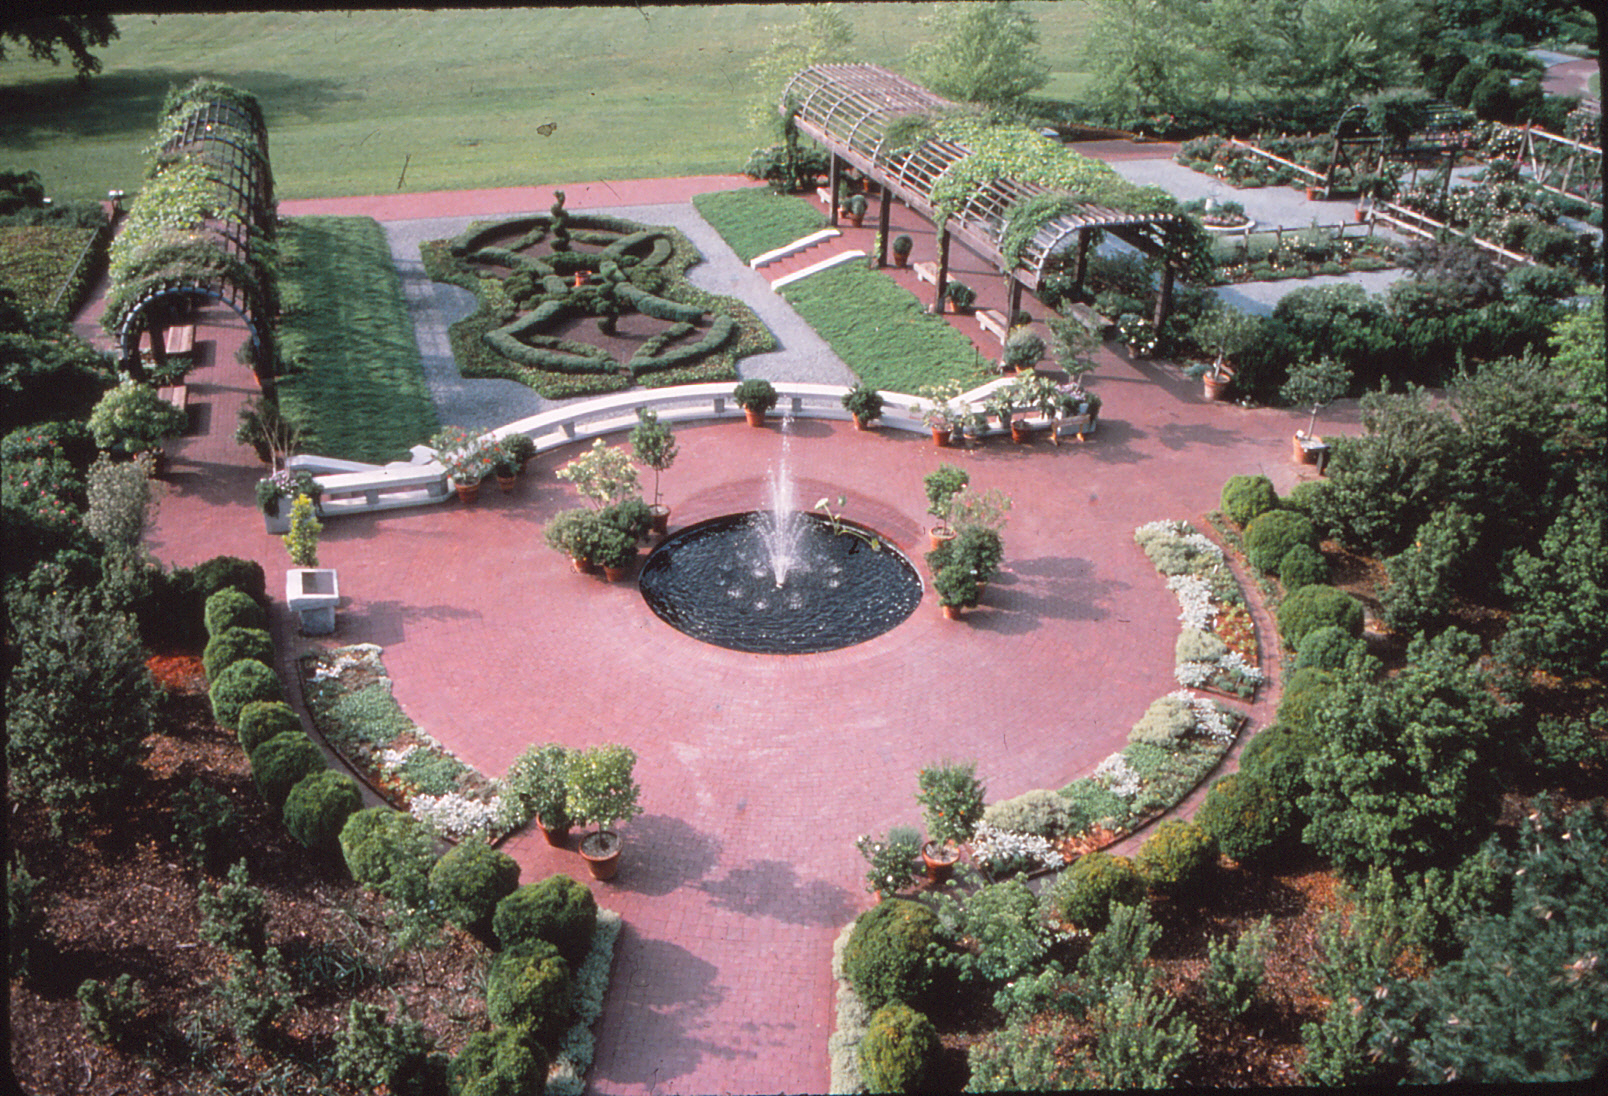 An aerial view of the Herb Garden's entrance garden